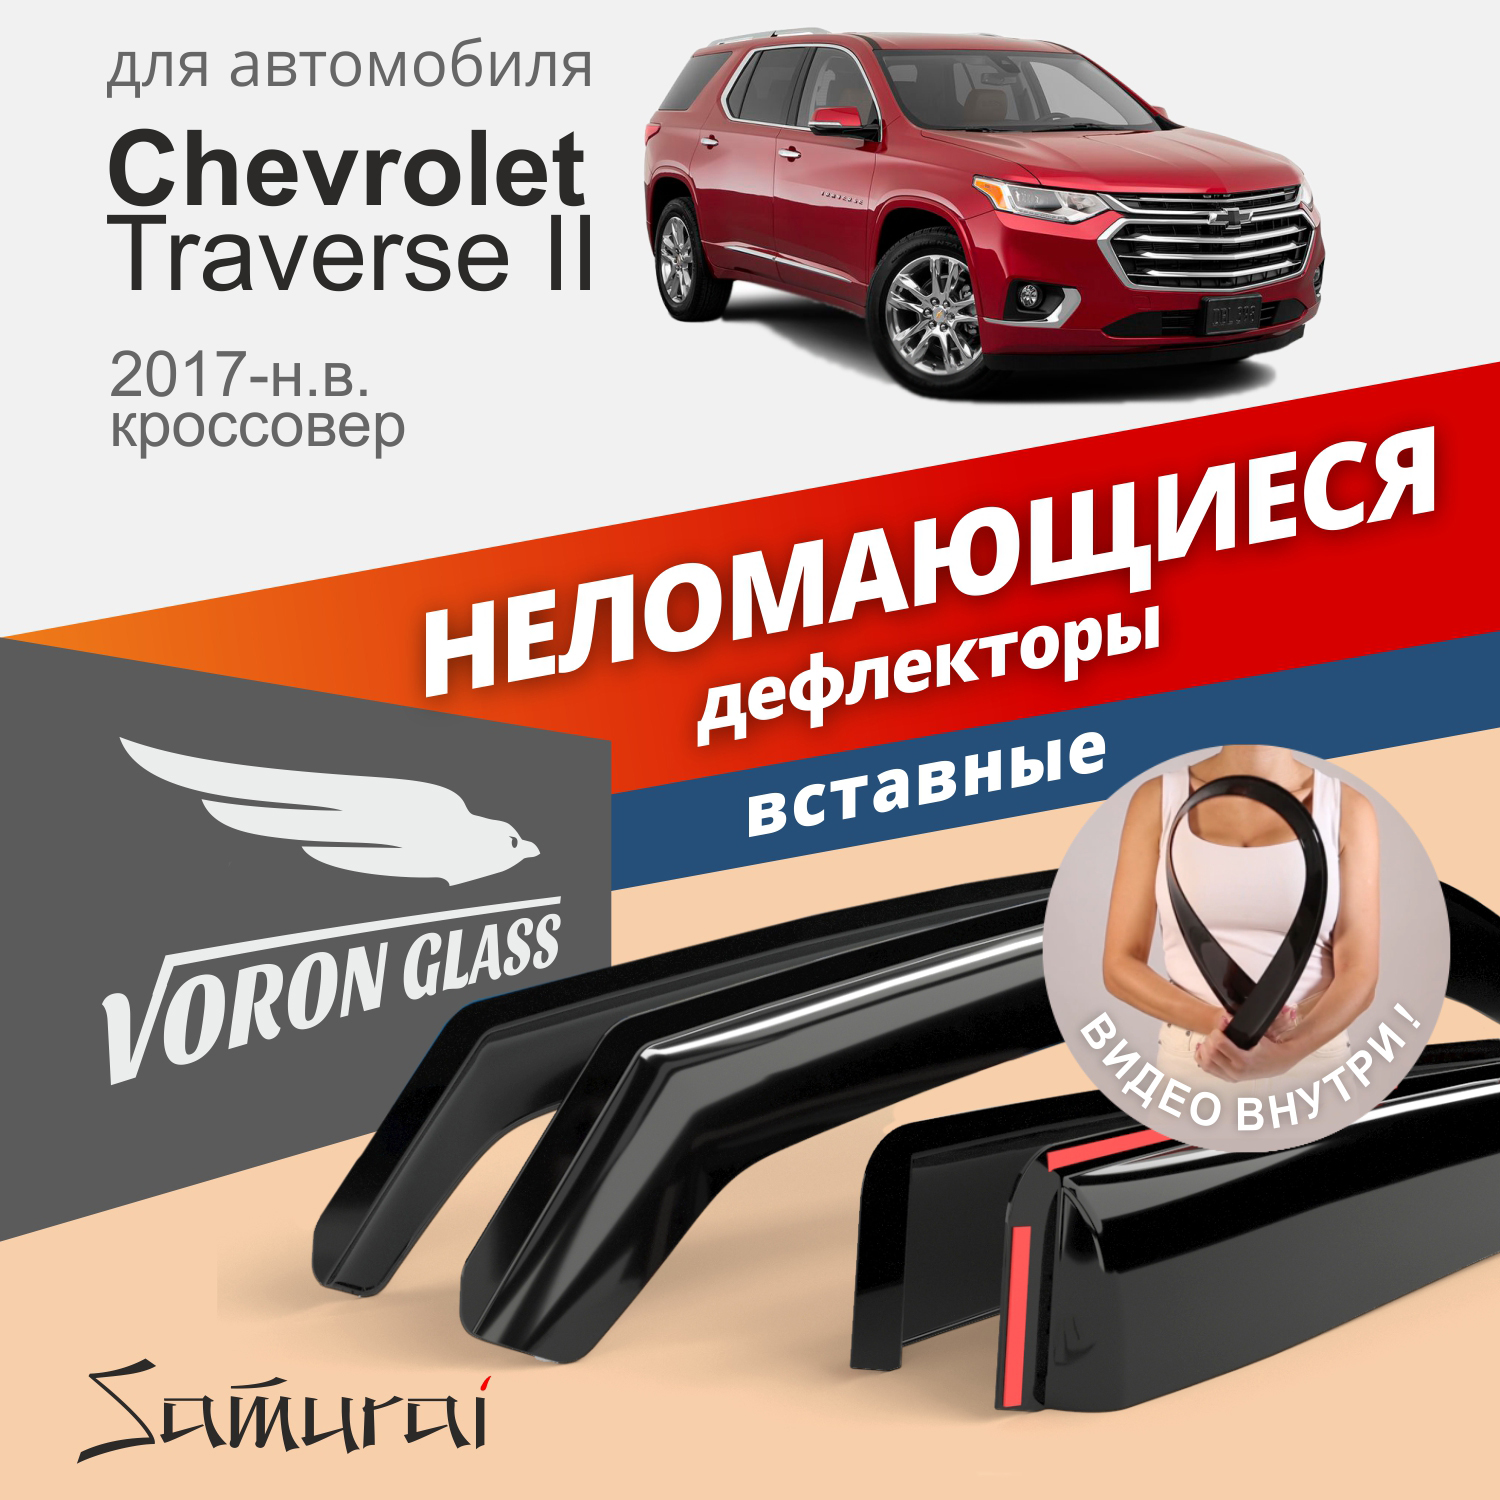 Дефлекторы Voron Glass Samurai для Chevrolet Traverse II 2017-н.в./кроссовер/вставные/4шт